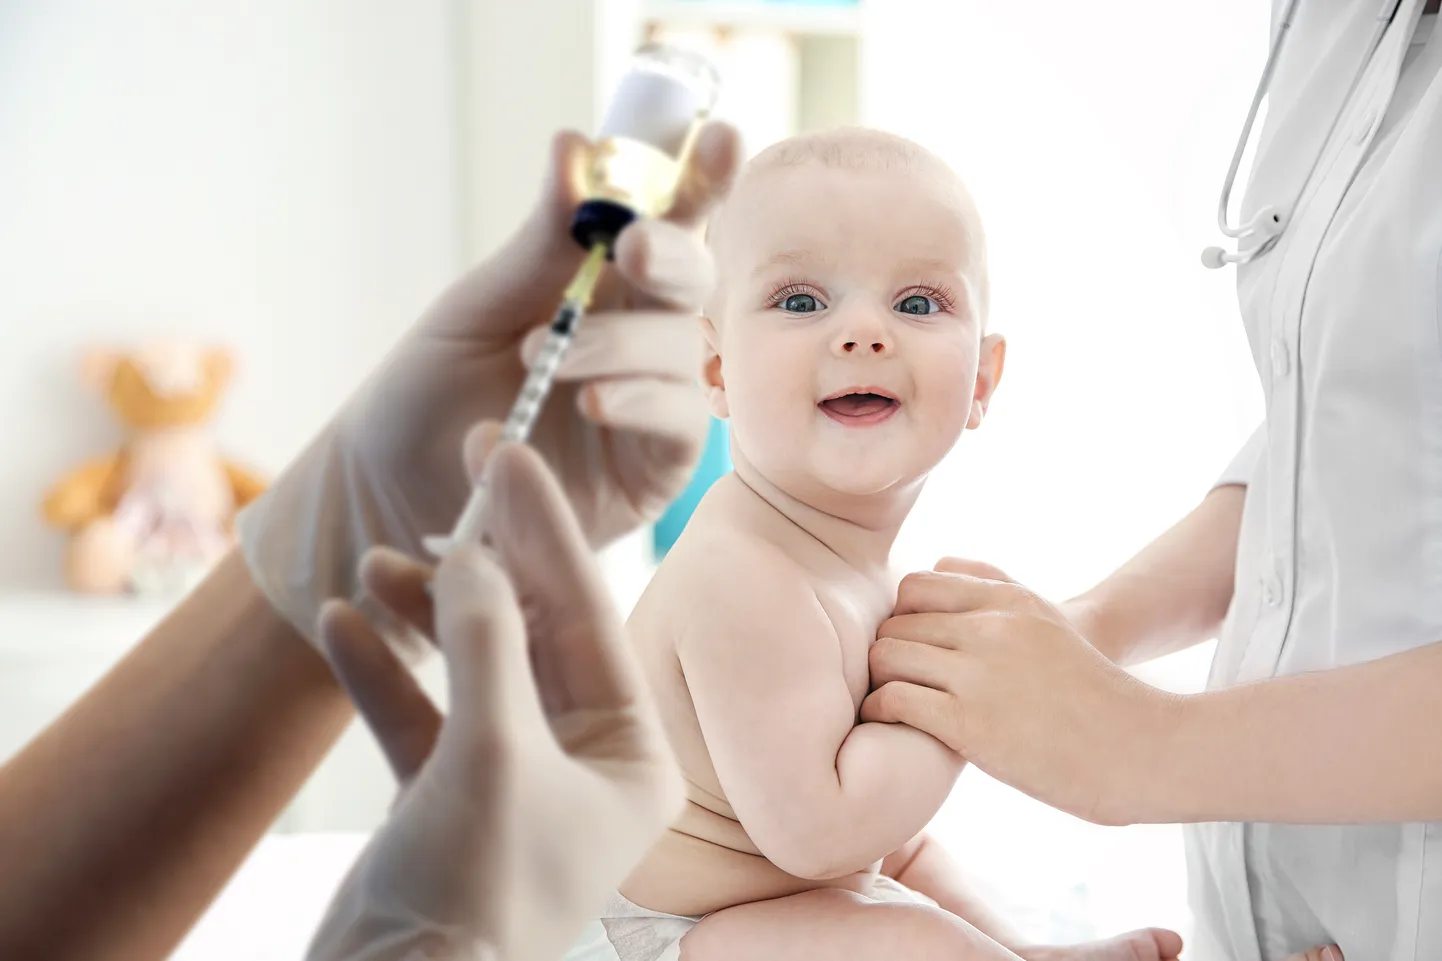 Vaktsiinid on pakkunud laialdasemat kaitset kui vaid haiguste vastu, mille ära hoidmiseks on neid kasutatud.